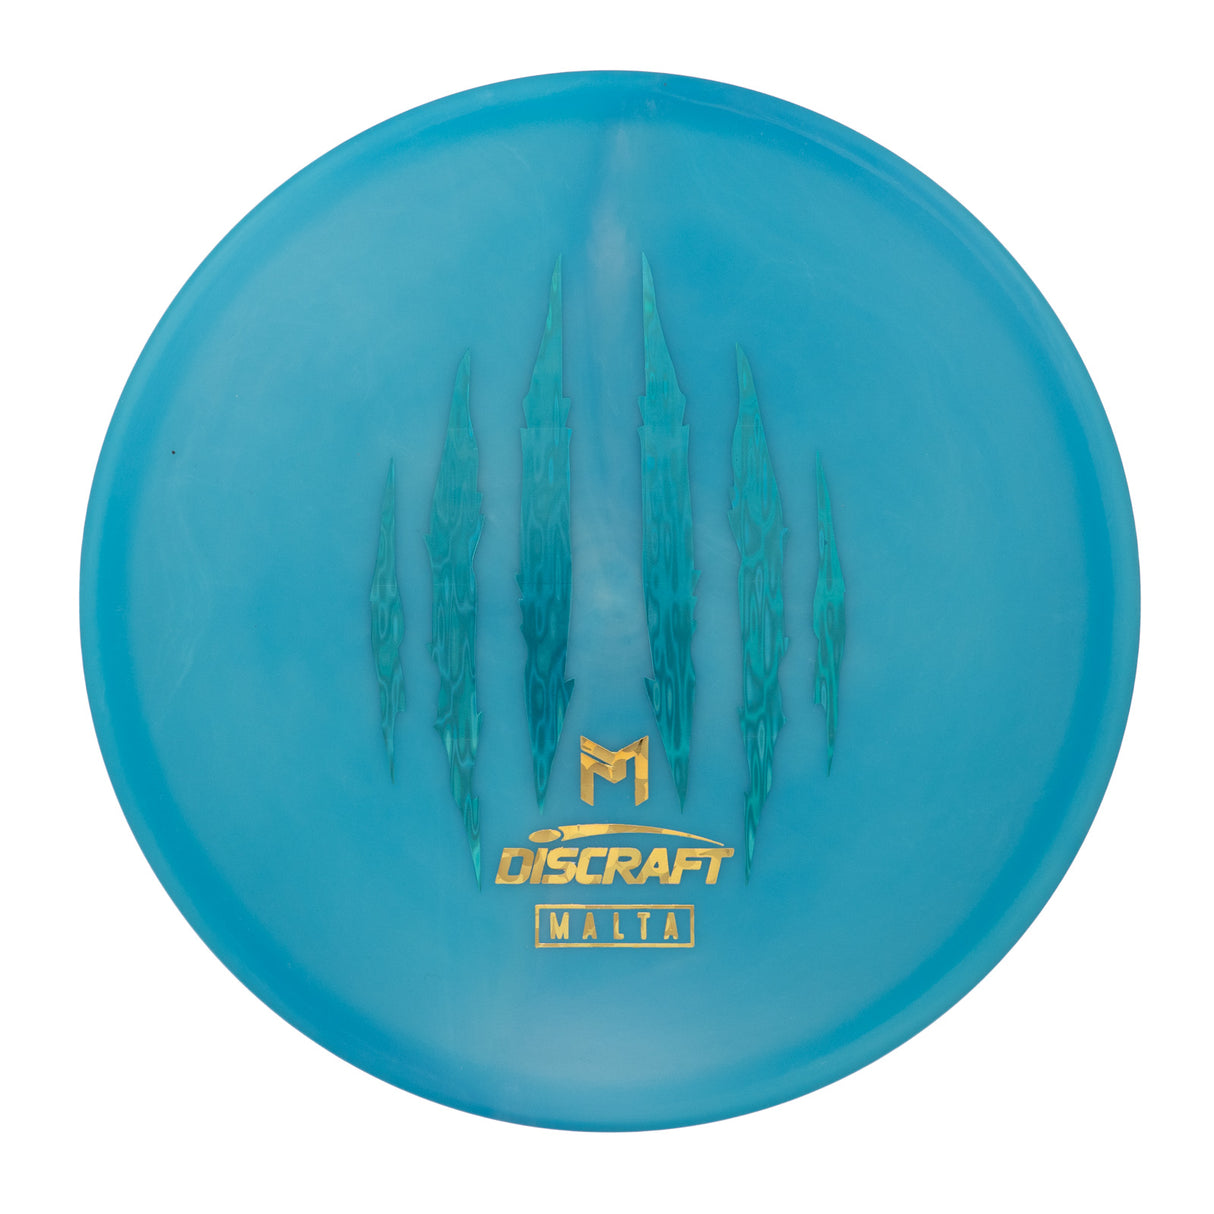 Discraft Malta - Paul McBeth 6x Claw Edition ESP 174g | Style 0002